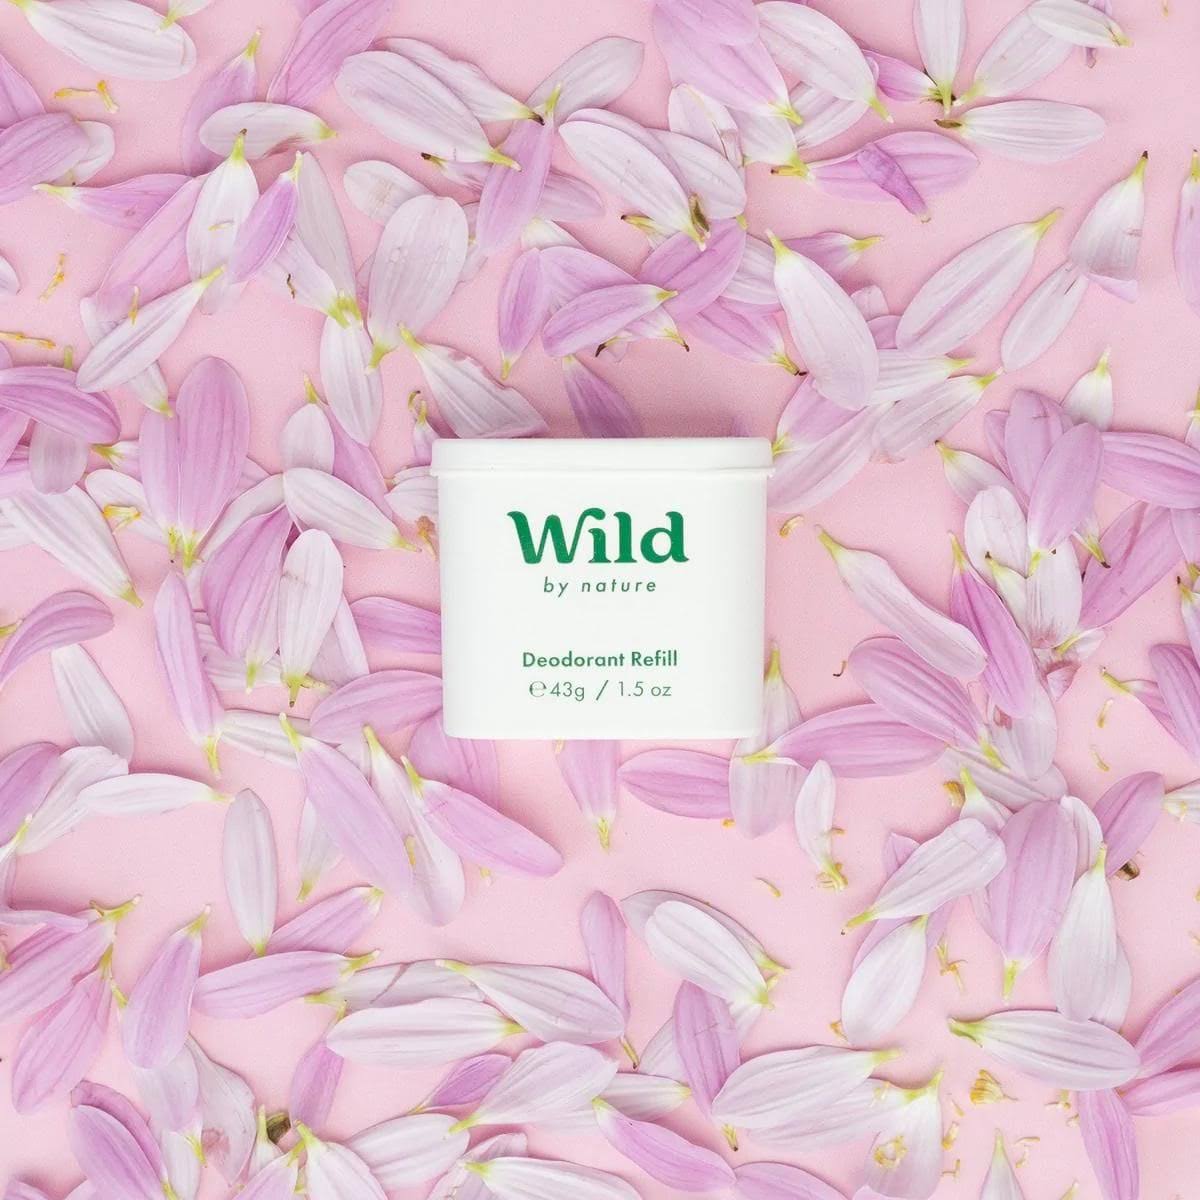 Wild Deodorant Refill - Jasmine & Mandarin Blossom